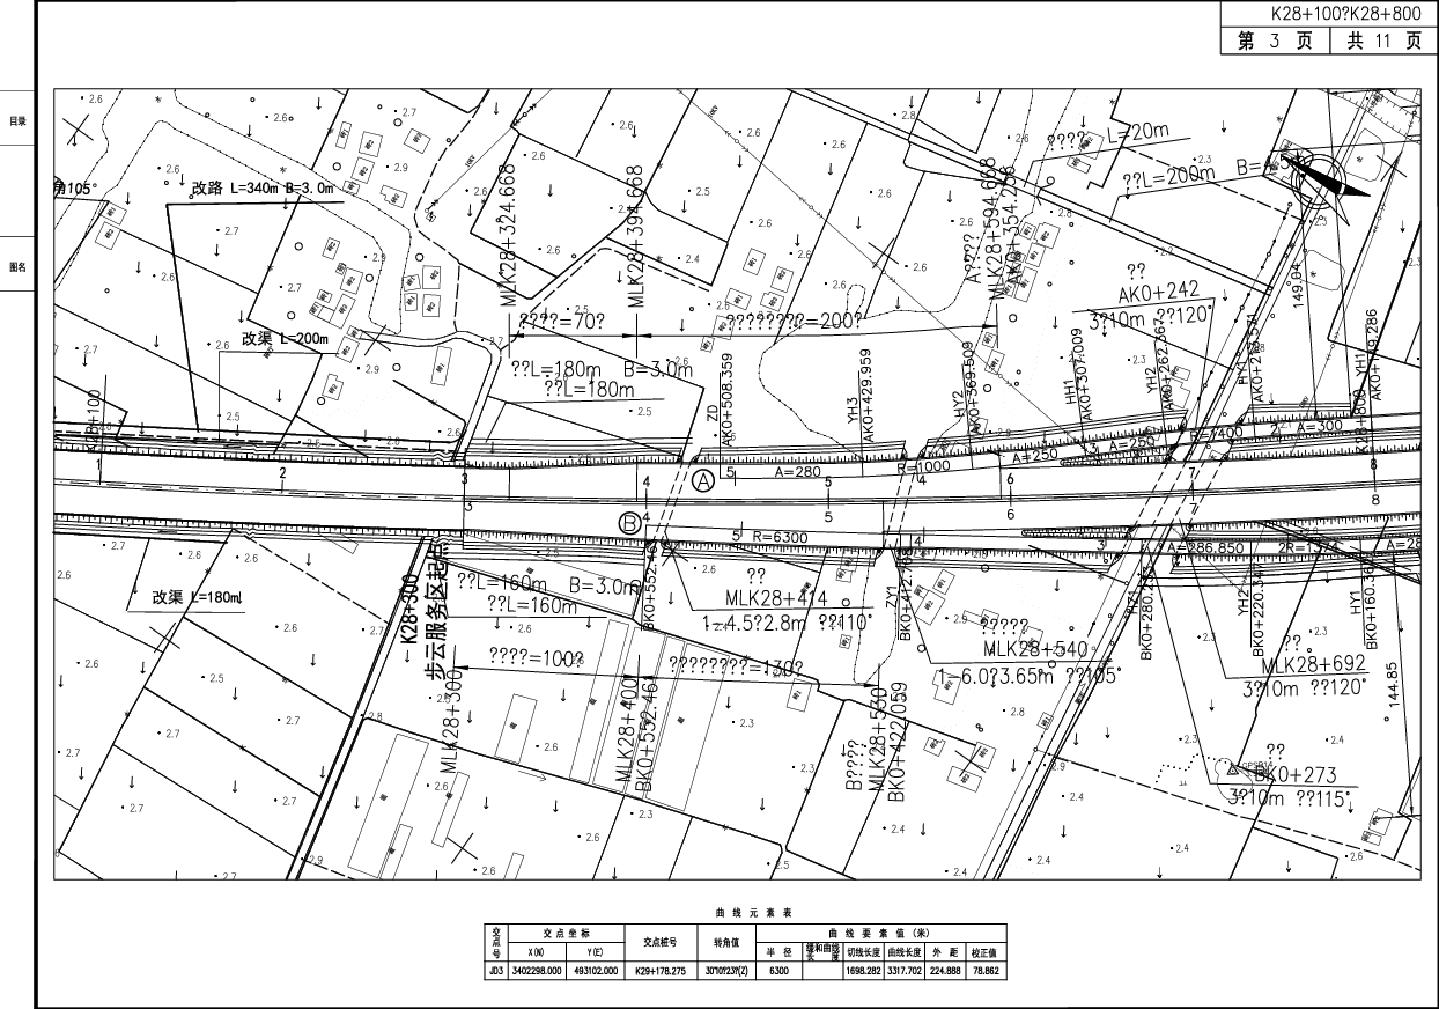 杭州湾跨海大桥北岸连接线工程第2合同总体设计图3CAD图.dwg